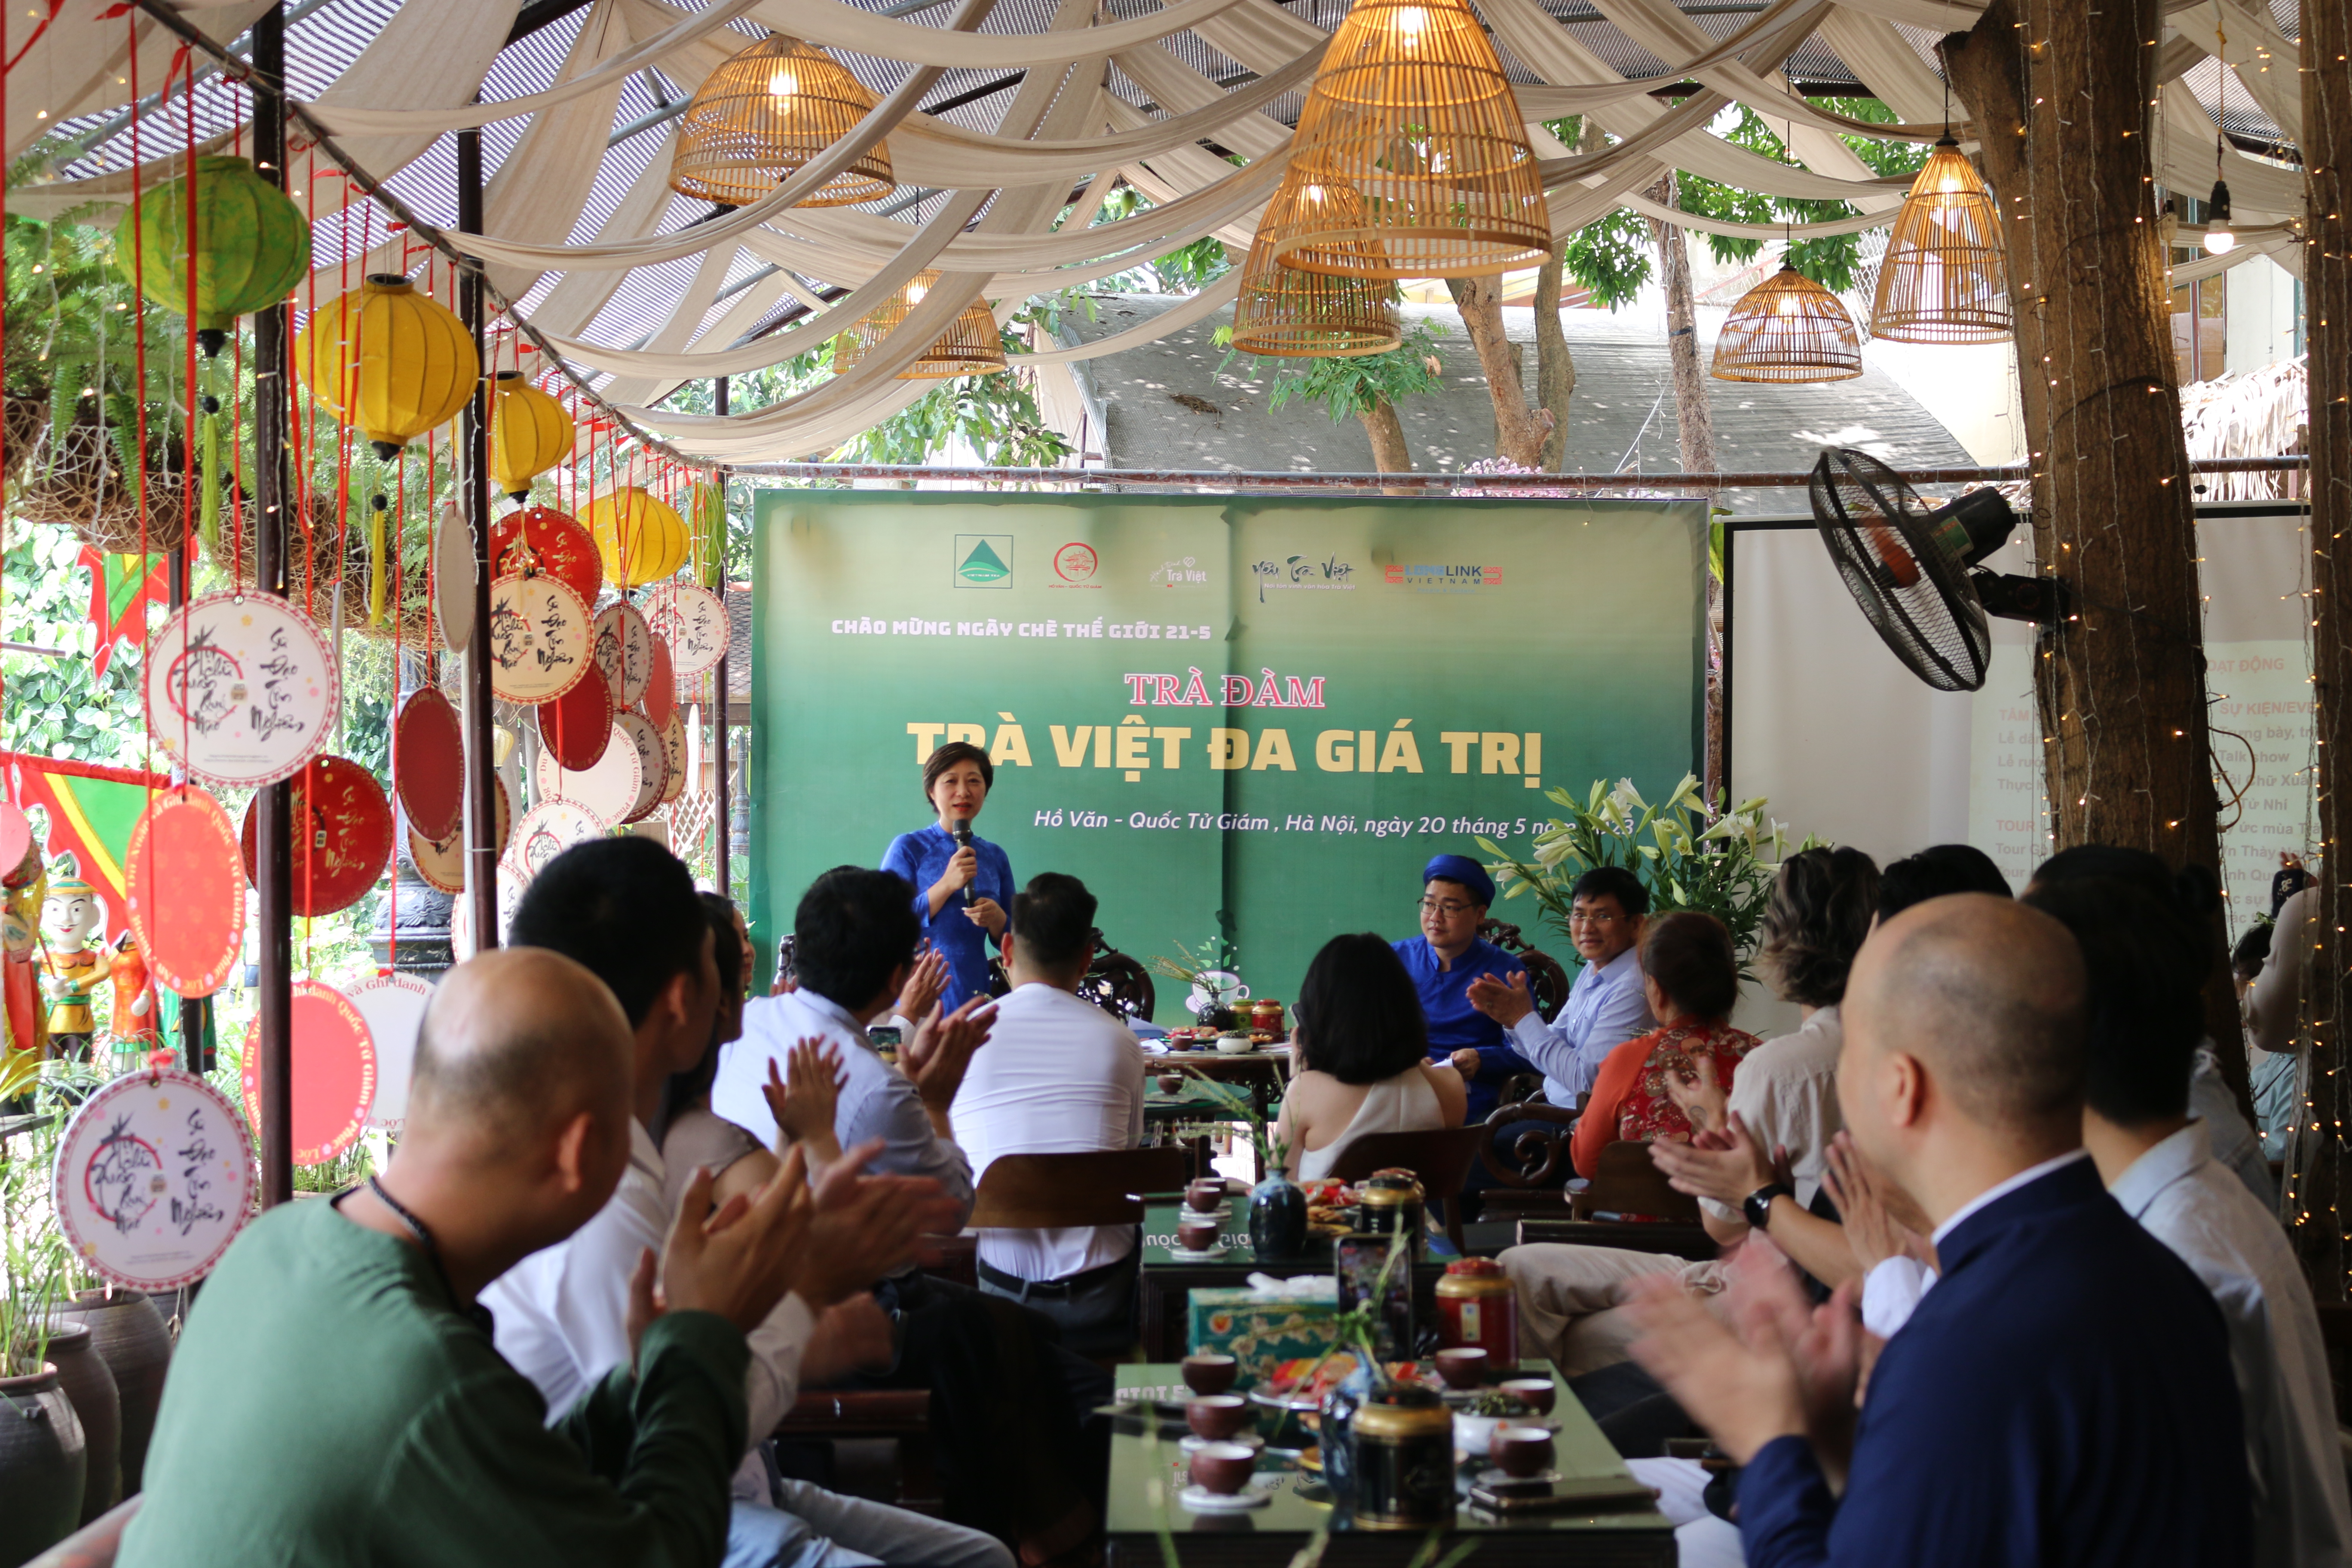  Bà Tăng Thu Hà - Tổng Giám đốc Công ty Long Link chia sẻ về hoạt động giáo dục di sản với không gian văn hóa trà Việt.